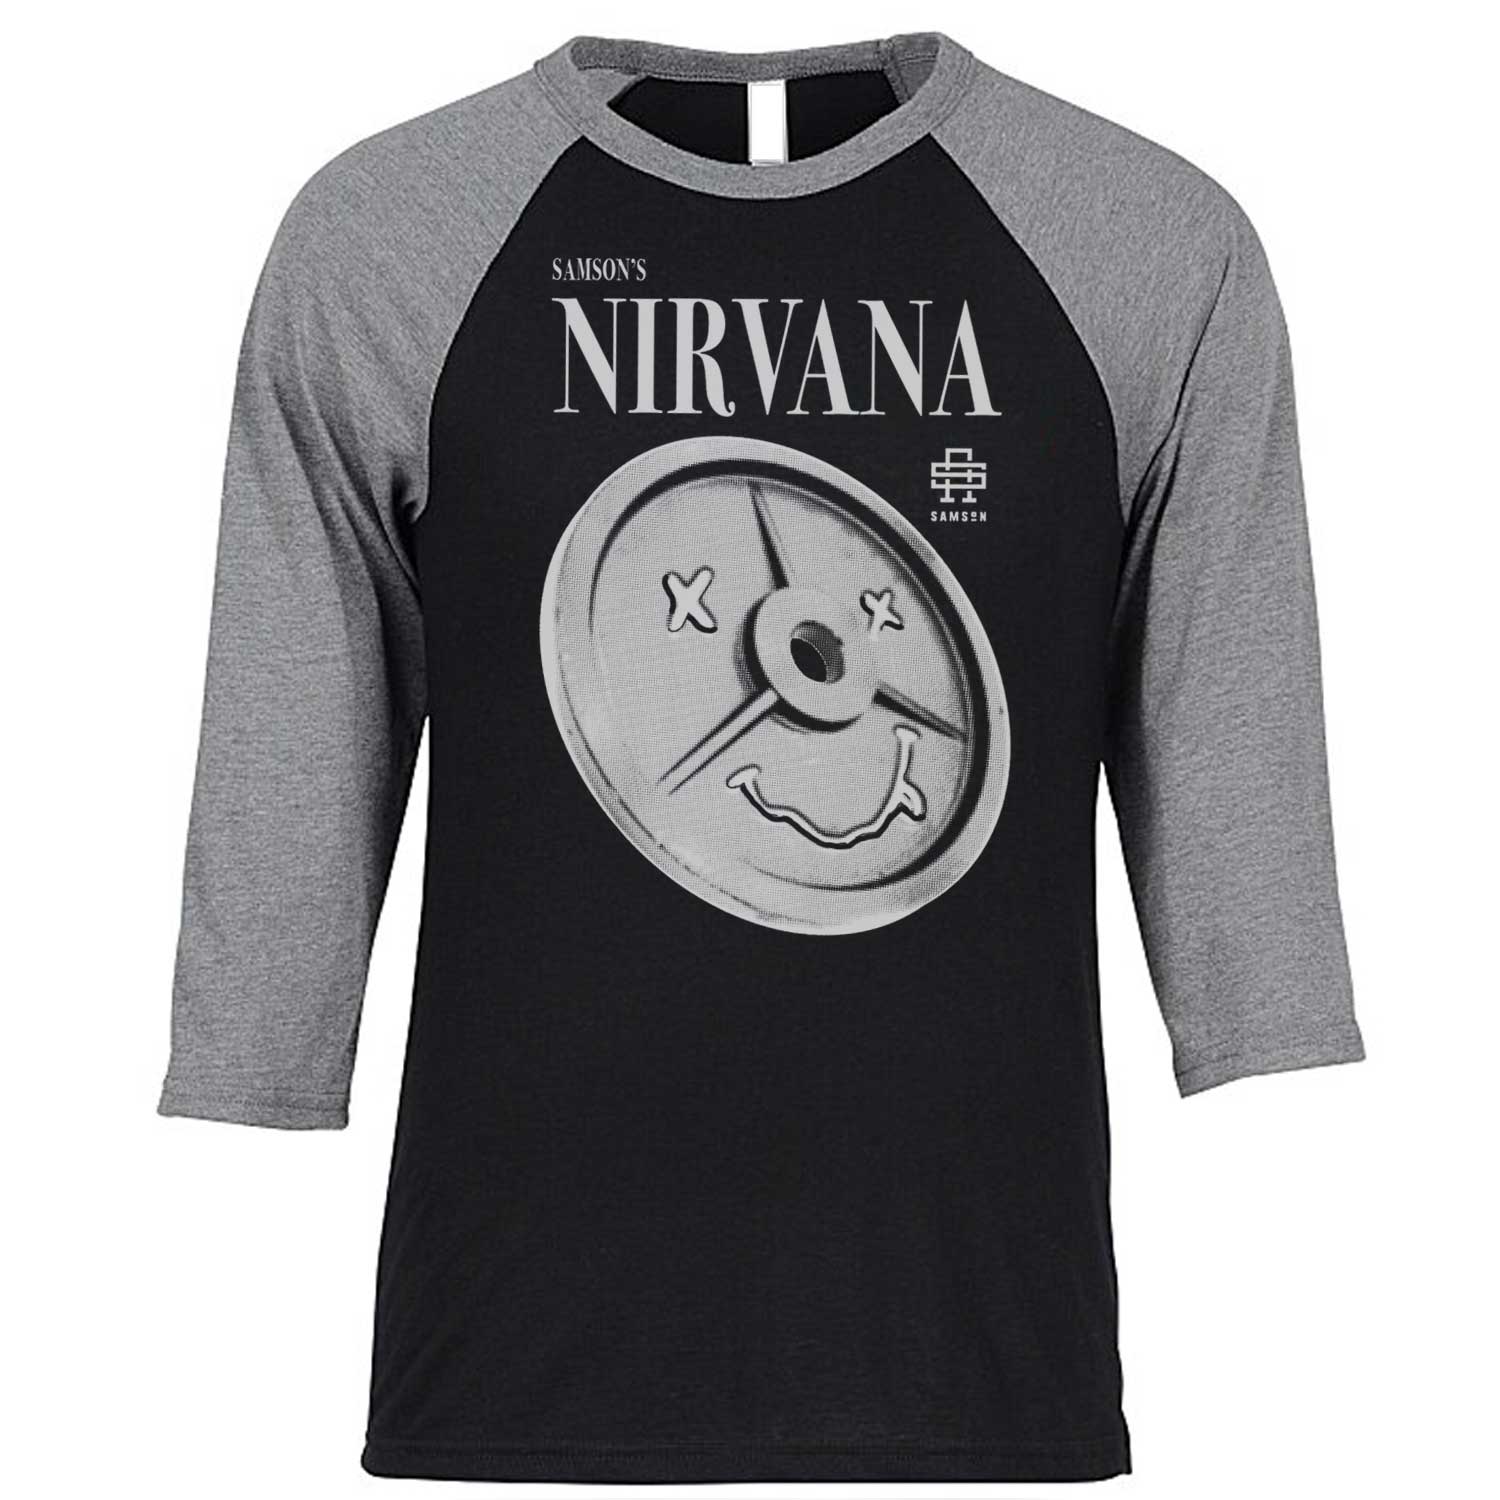 Samson's Nirvana Baseball T-Shirt